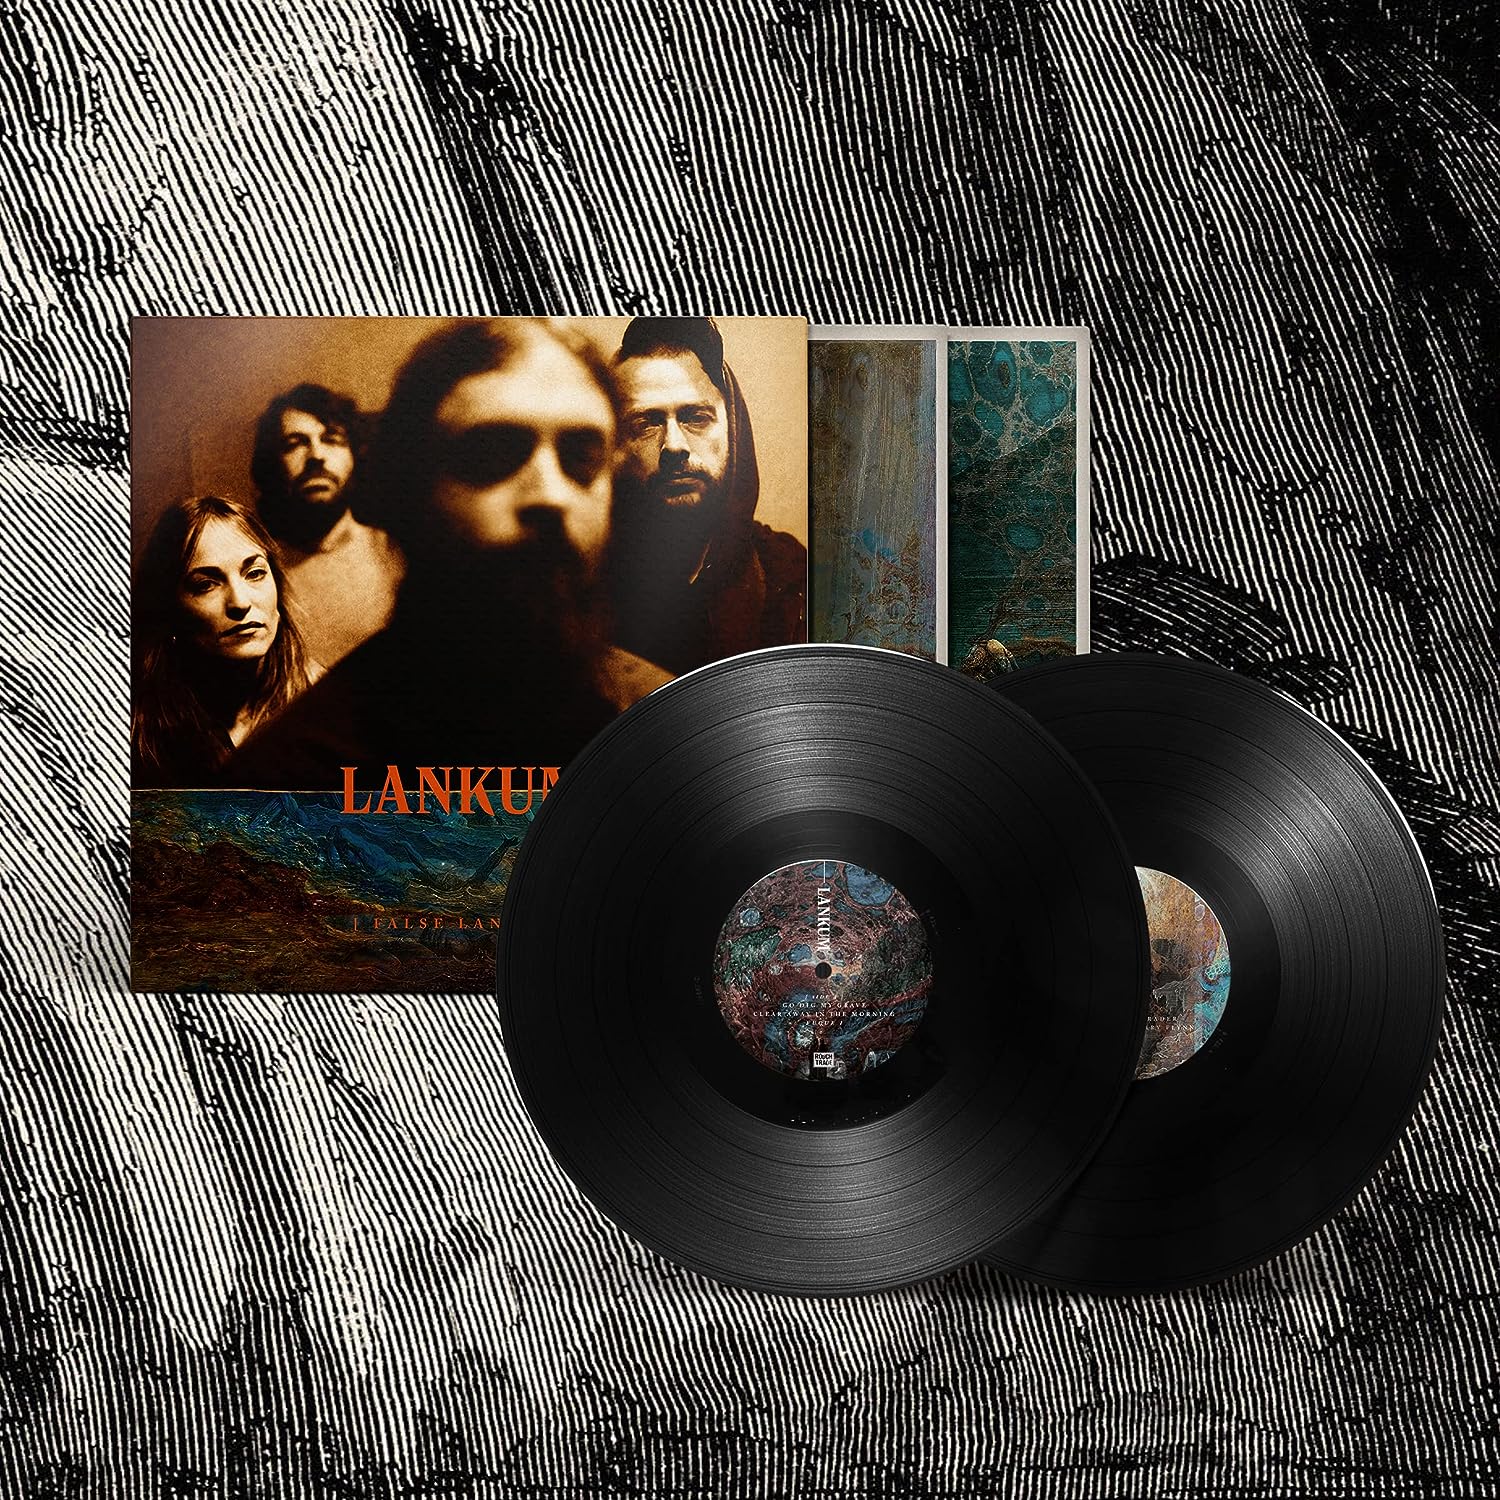 Lankum - False Lankum: Vinyl 2LP